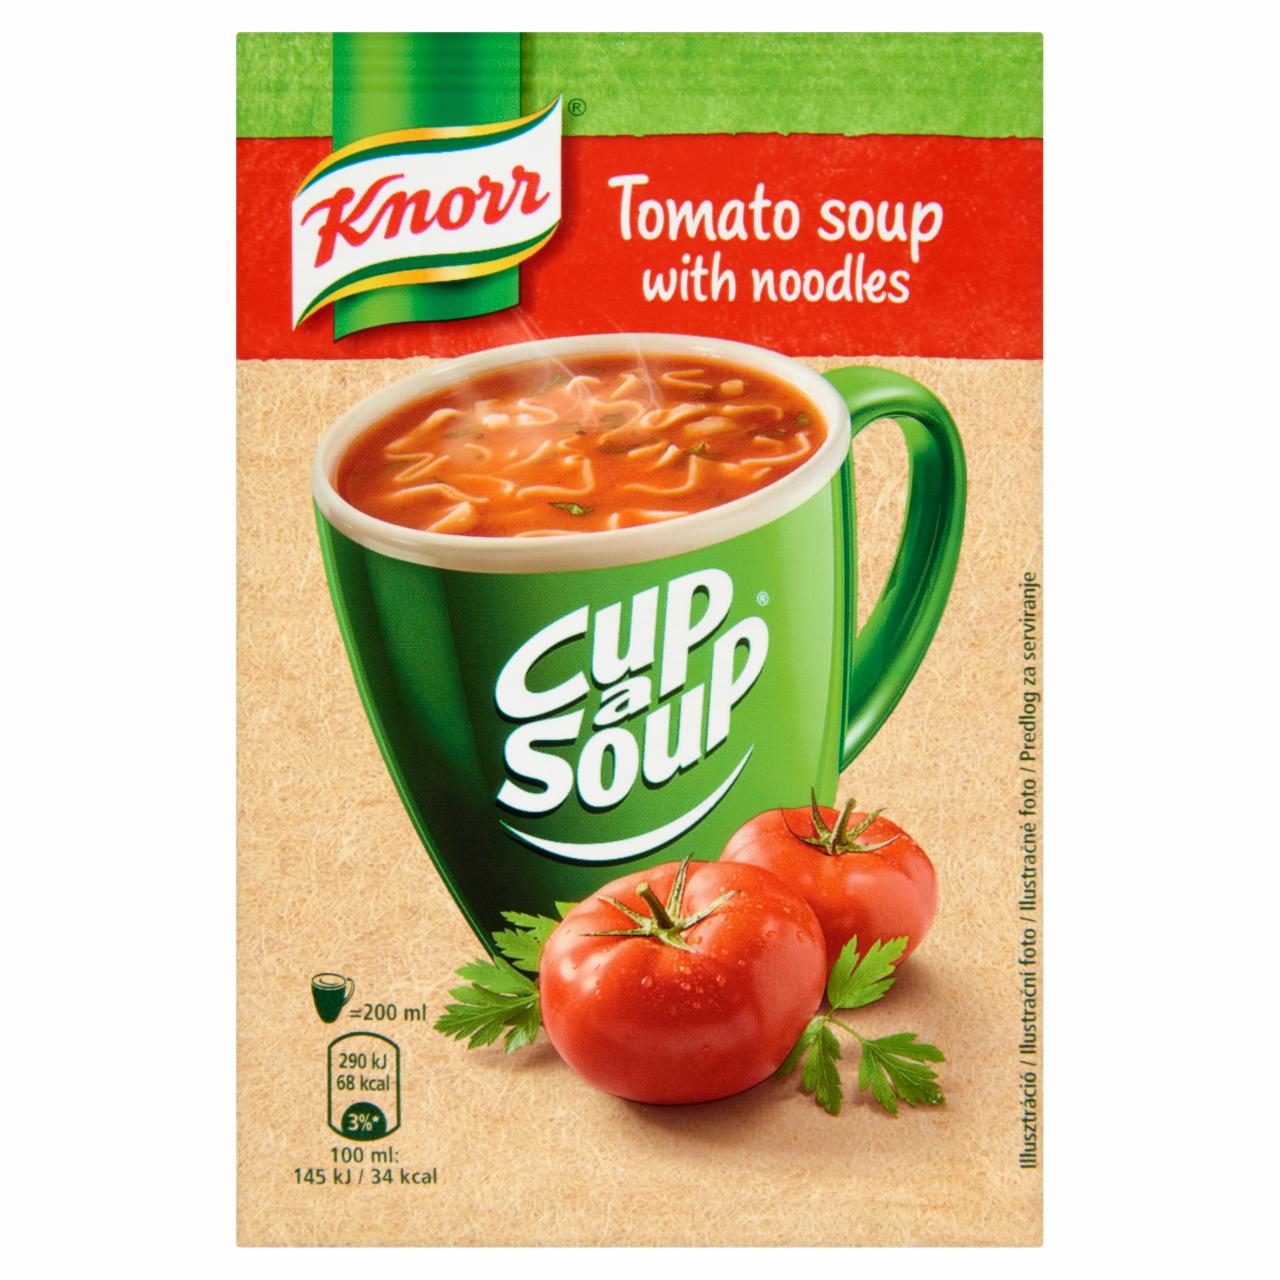 Képek - Cup a Soup paradicsomleves tésztával Knorr